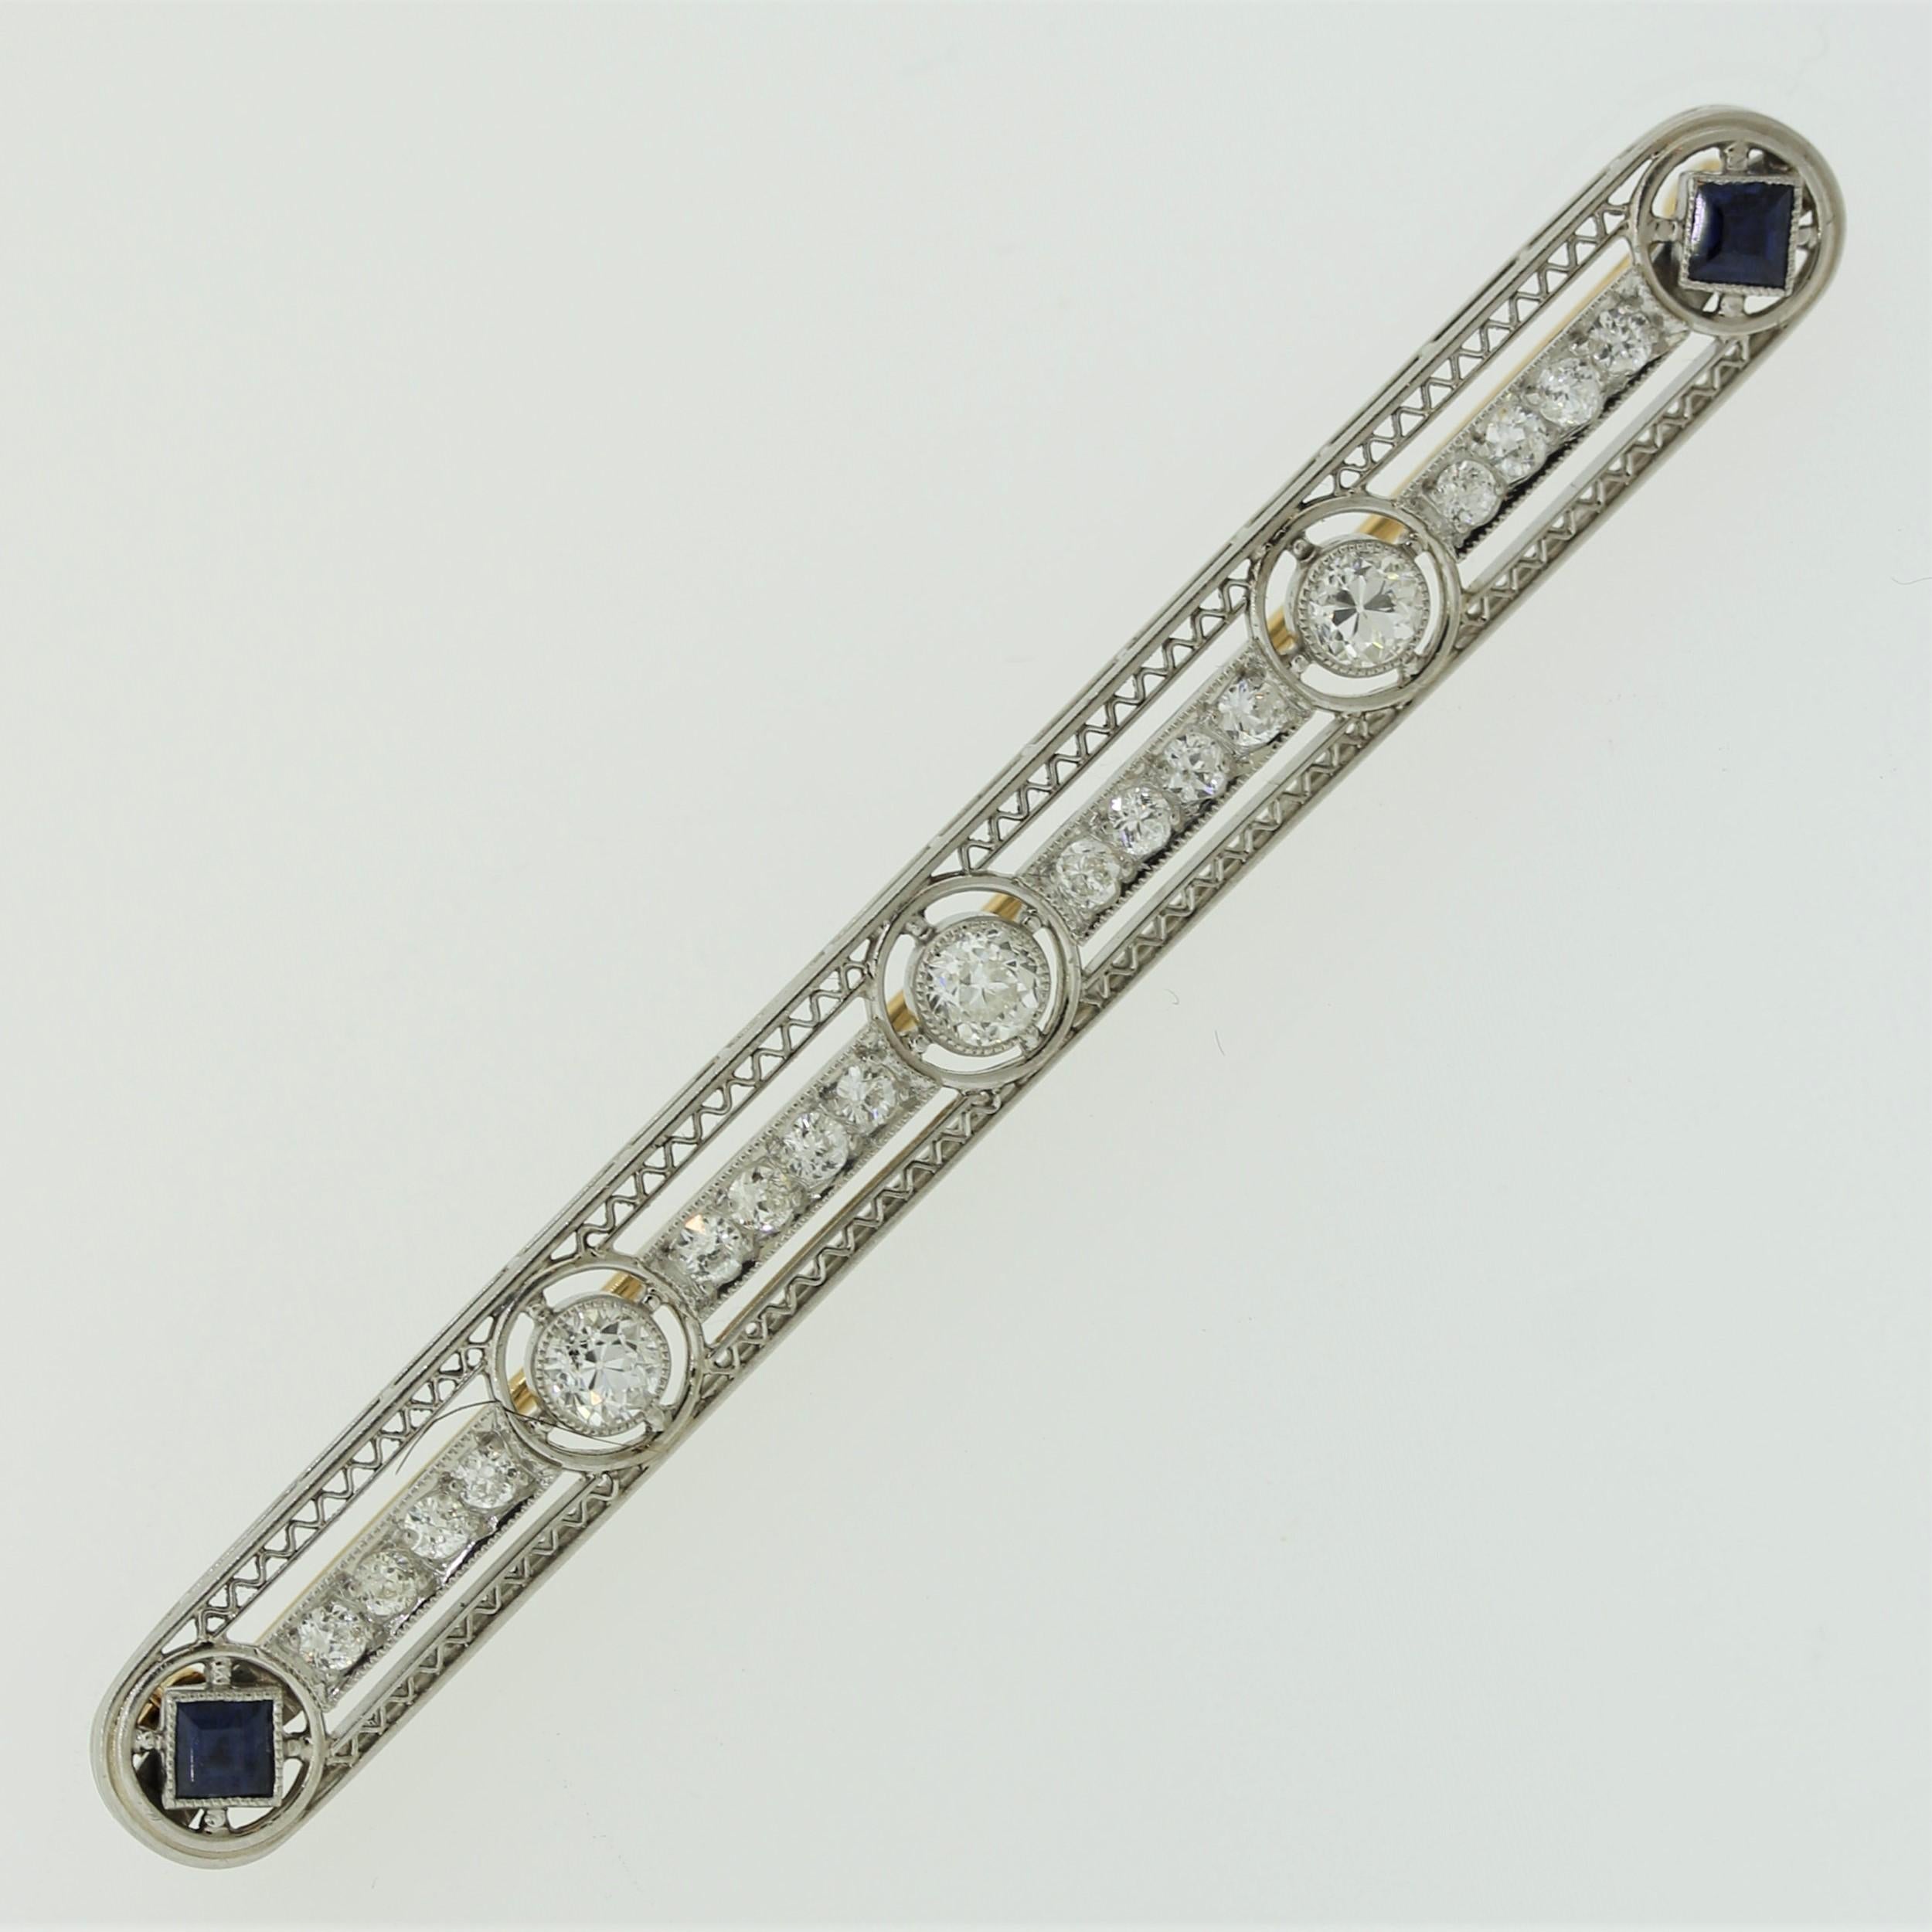 Eine schöne Antiquität aus der frühen Art-déco-Ära, um 1920. Das Originalstück weist 19 weiße Diamanten im europäischen Brillantschliff auf, von denen die größten 3 in der Mitte des Stücks gefasst sind. Zwei Saphire im französischen Schliff